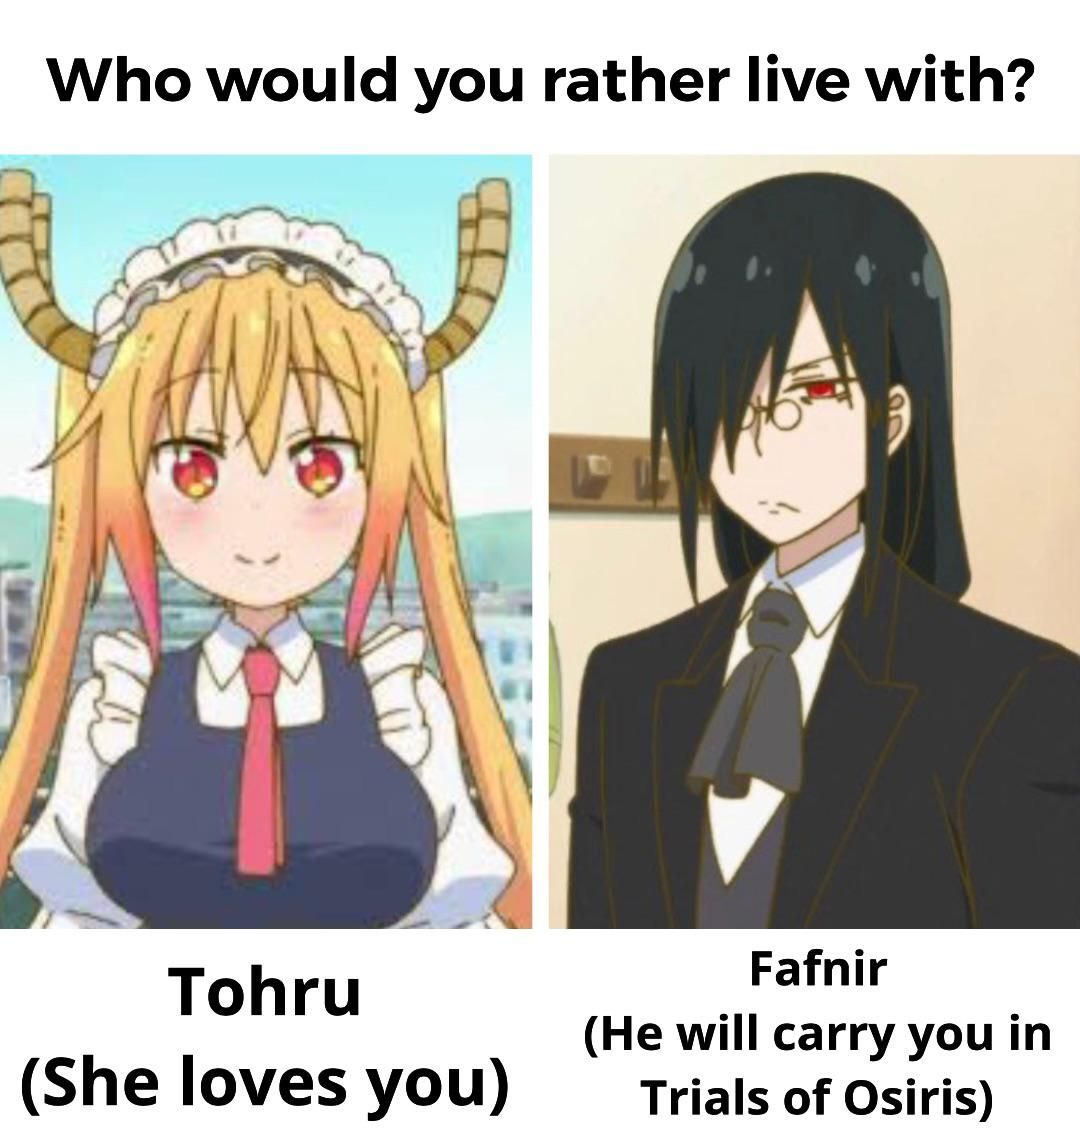 I think I know who I would choose.